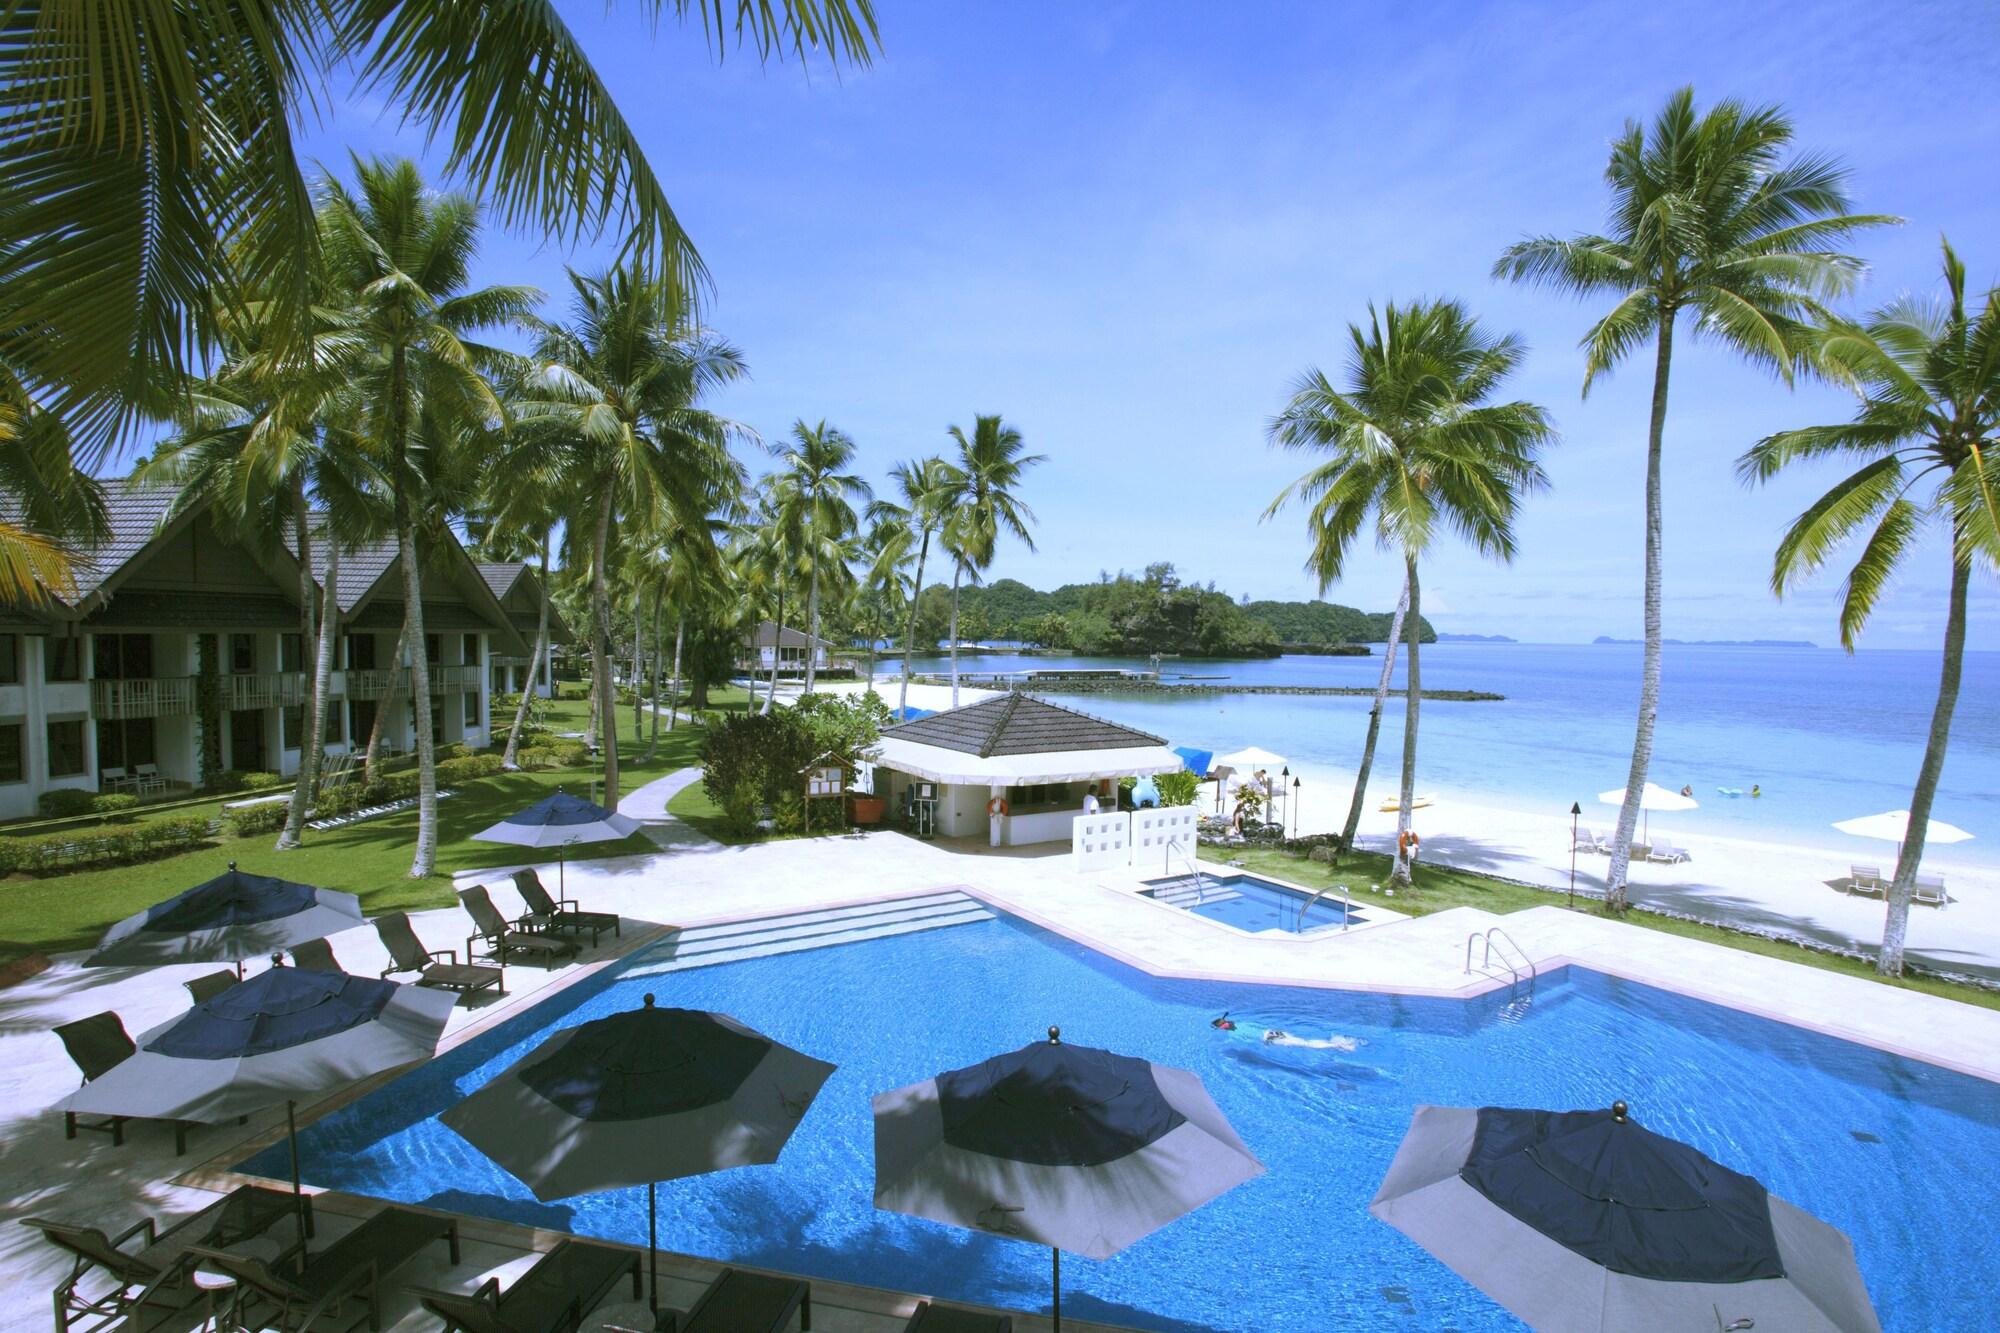 Palau Pacific Resort'in fotoğrafı otel alanı